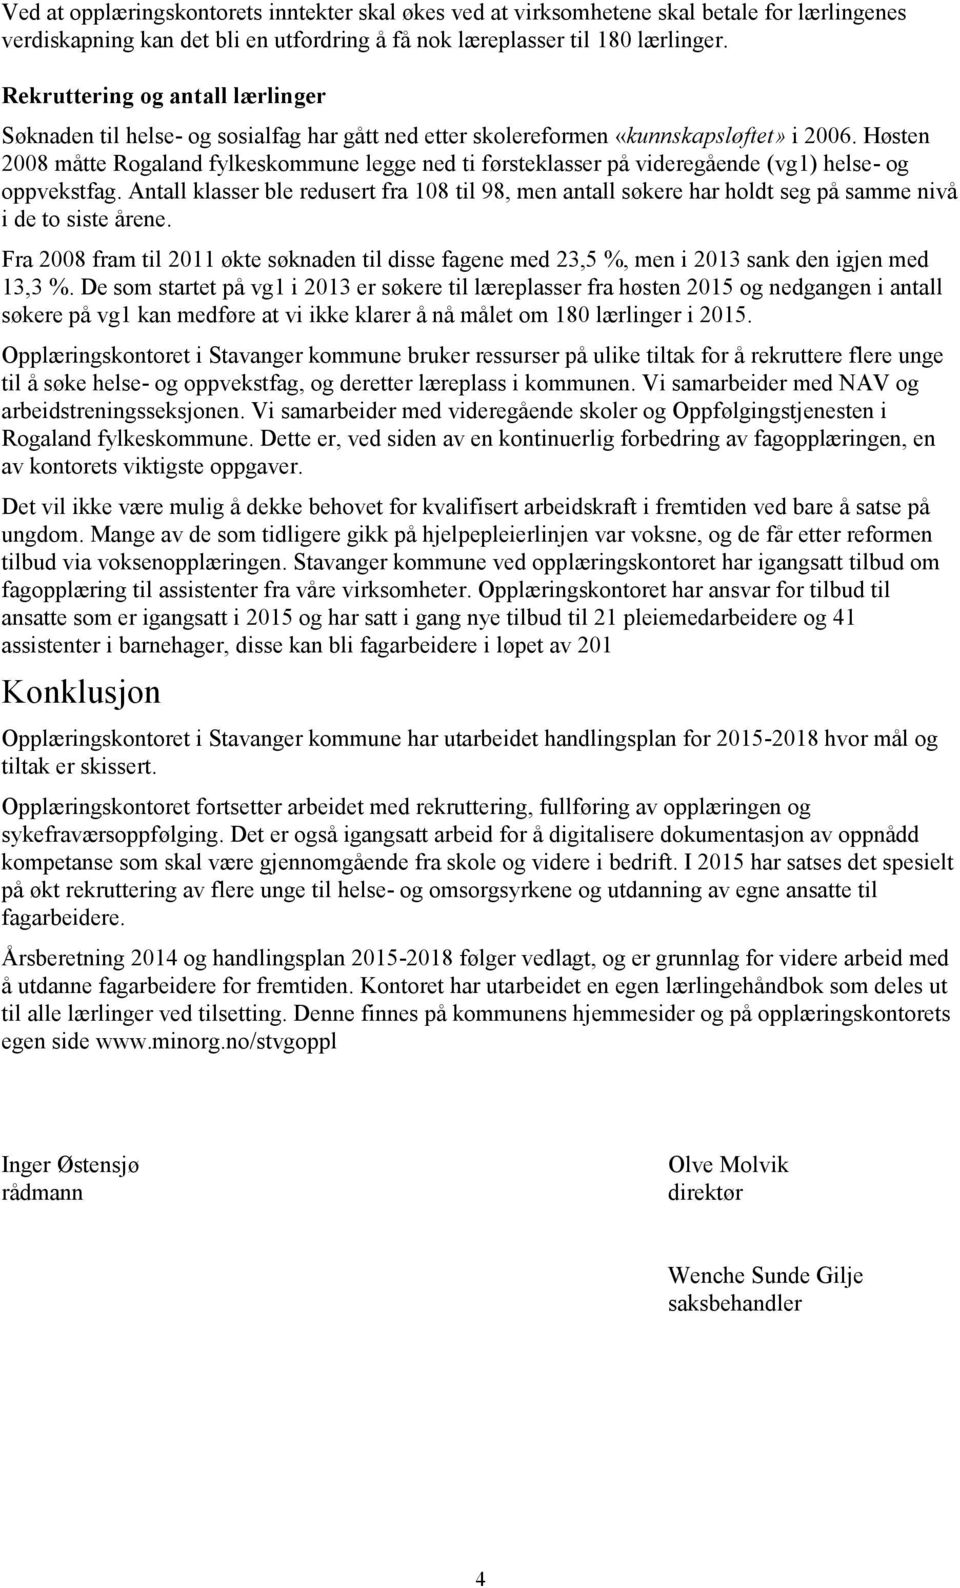 Høsten 2008 måtte Rogaland fylkeskommune legge ned ti førsteklasser på videregående (vg1) helse- og oppvekstfag.